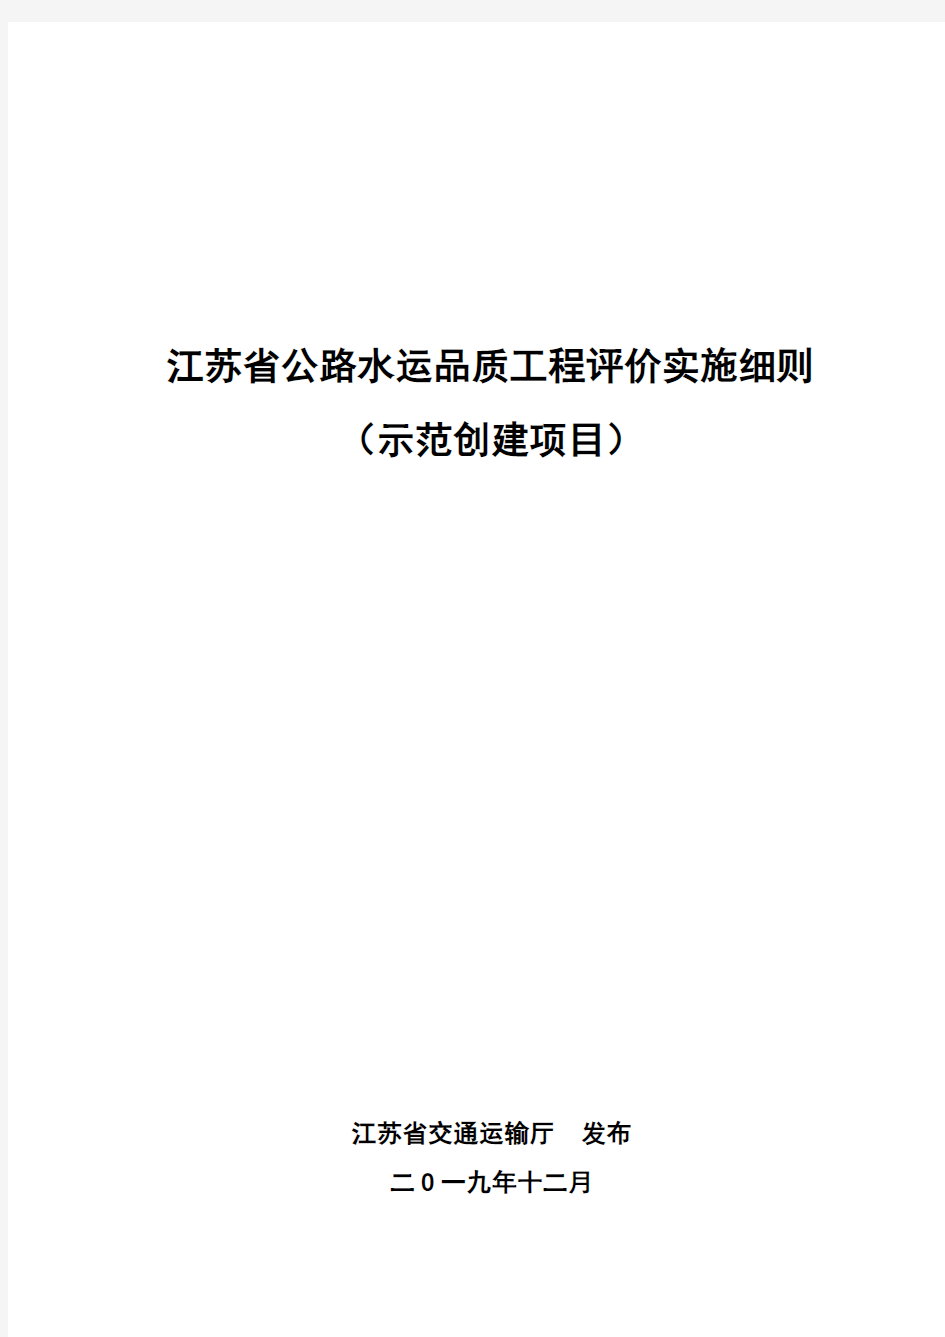 江苏省公路水运品质工程评价实施细则(示范创建项目)